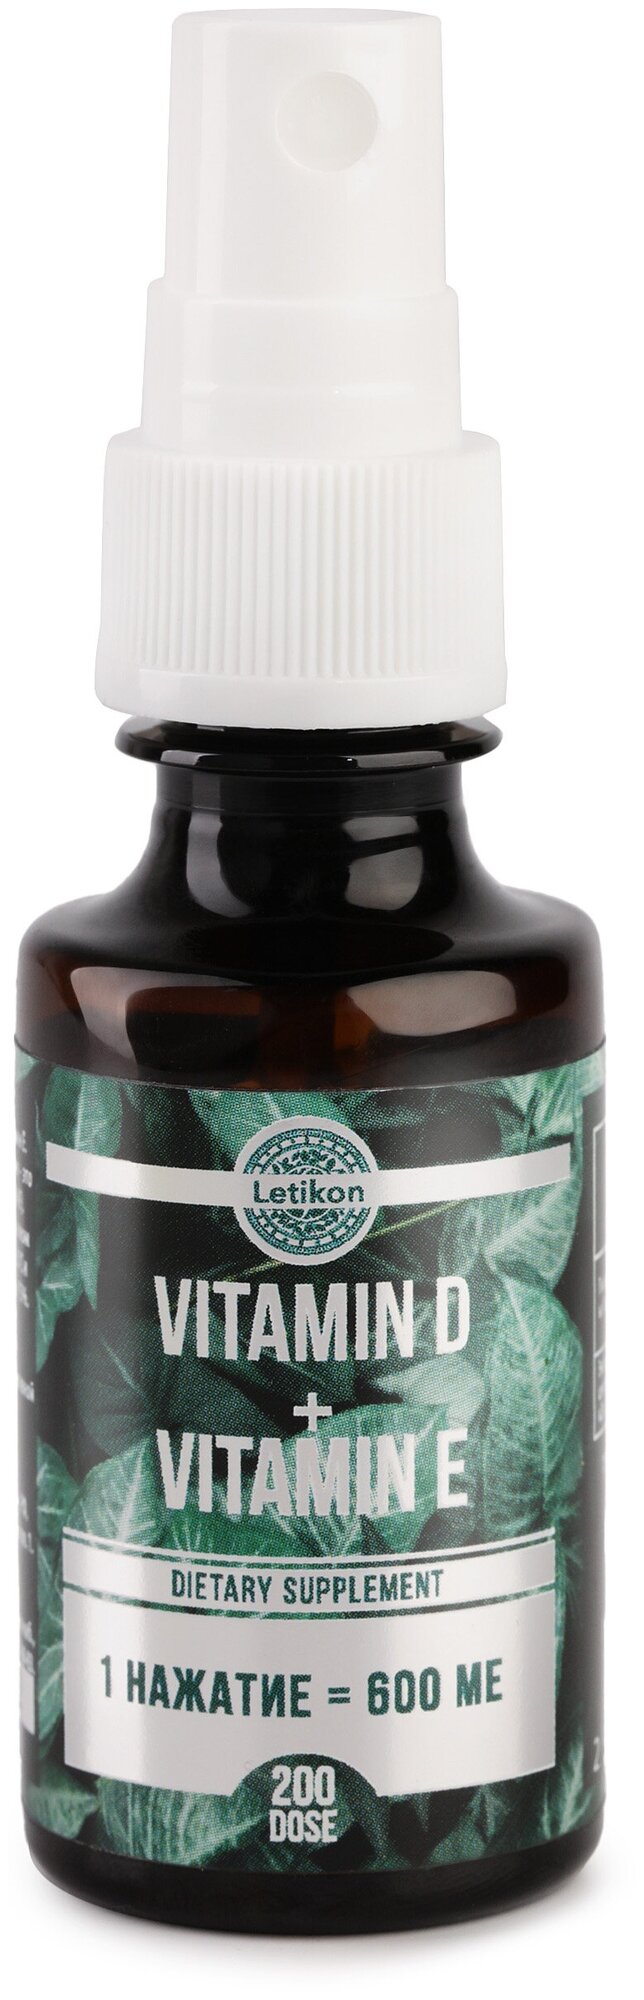 Комплексная пищевая добавка Letikon "VITAMIN D + VITAMIN E" бады и витамины для волос и кожи витамины для женщин и мужчин 30 мл